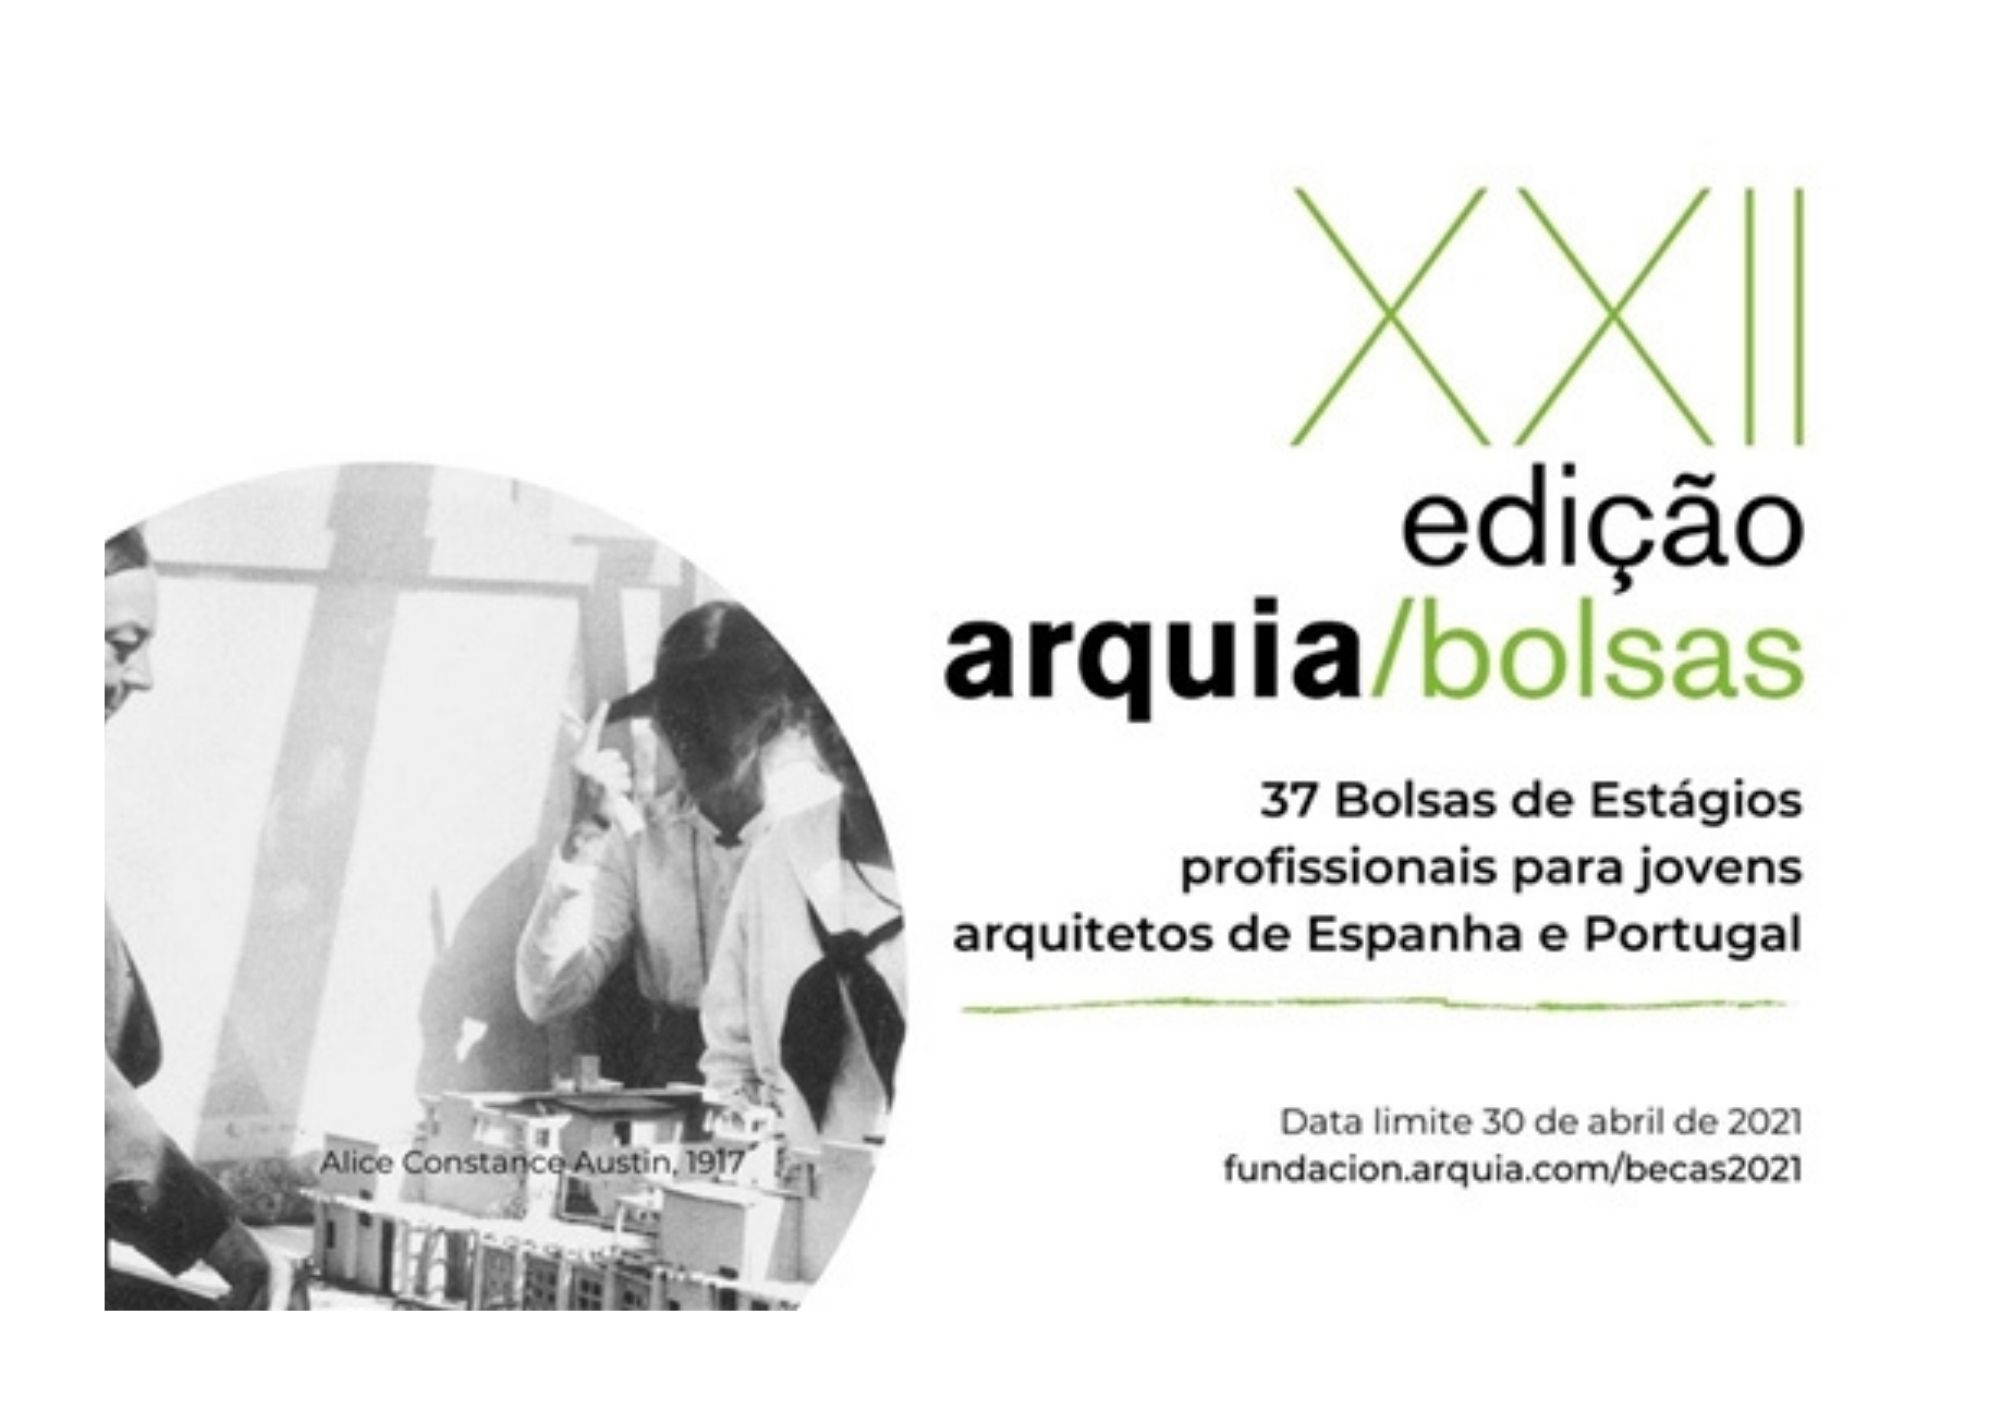 Aberto concurso para atribuição de 37 bolsas de estudo para estudantes de Arquitetura e jovens arquitetos de Portugal e Espanha até 30 de abril